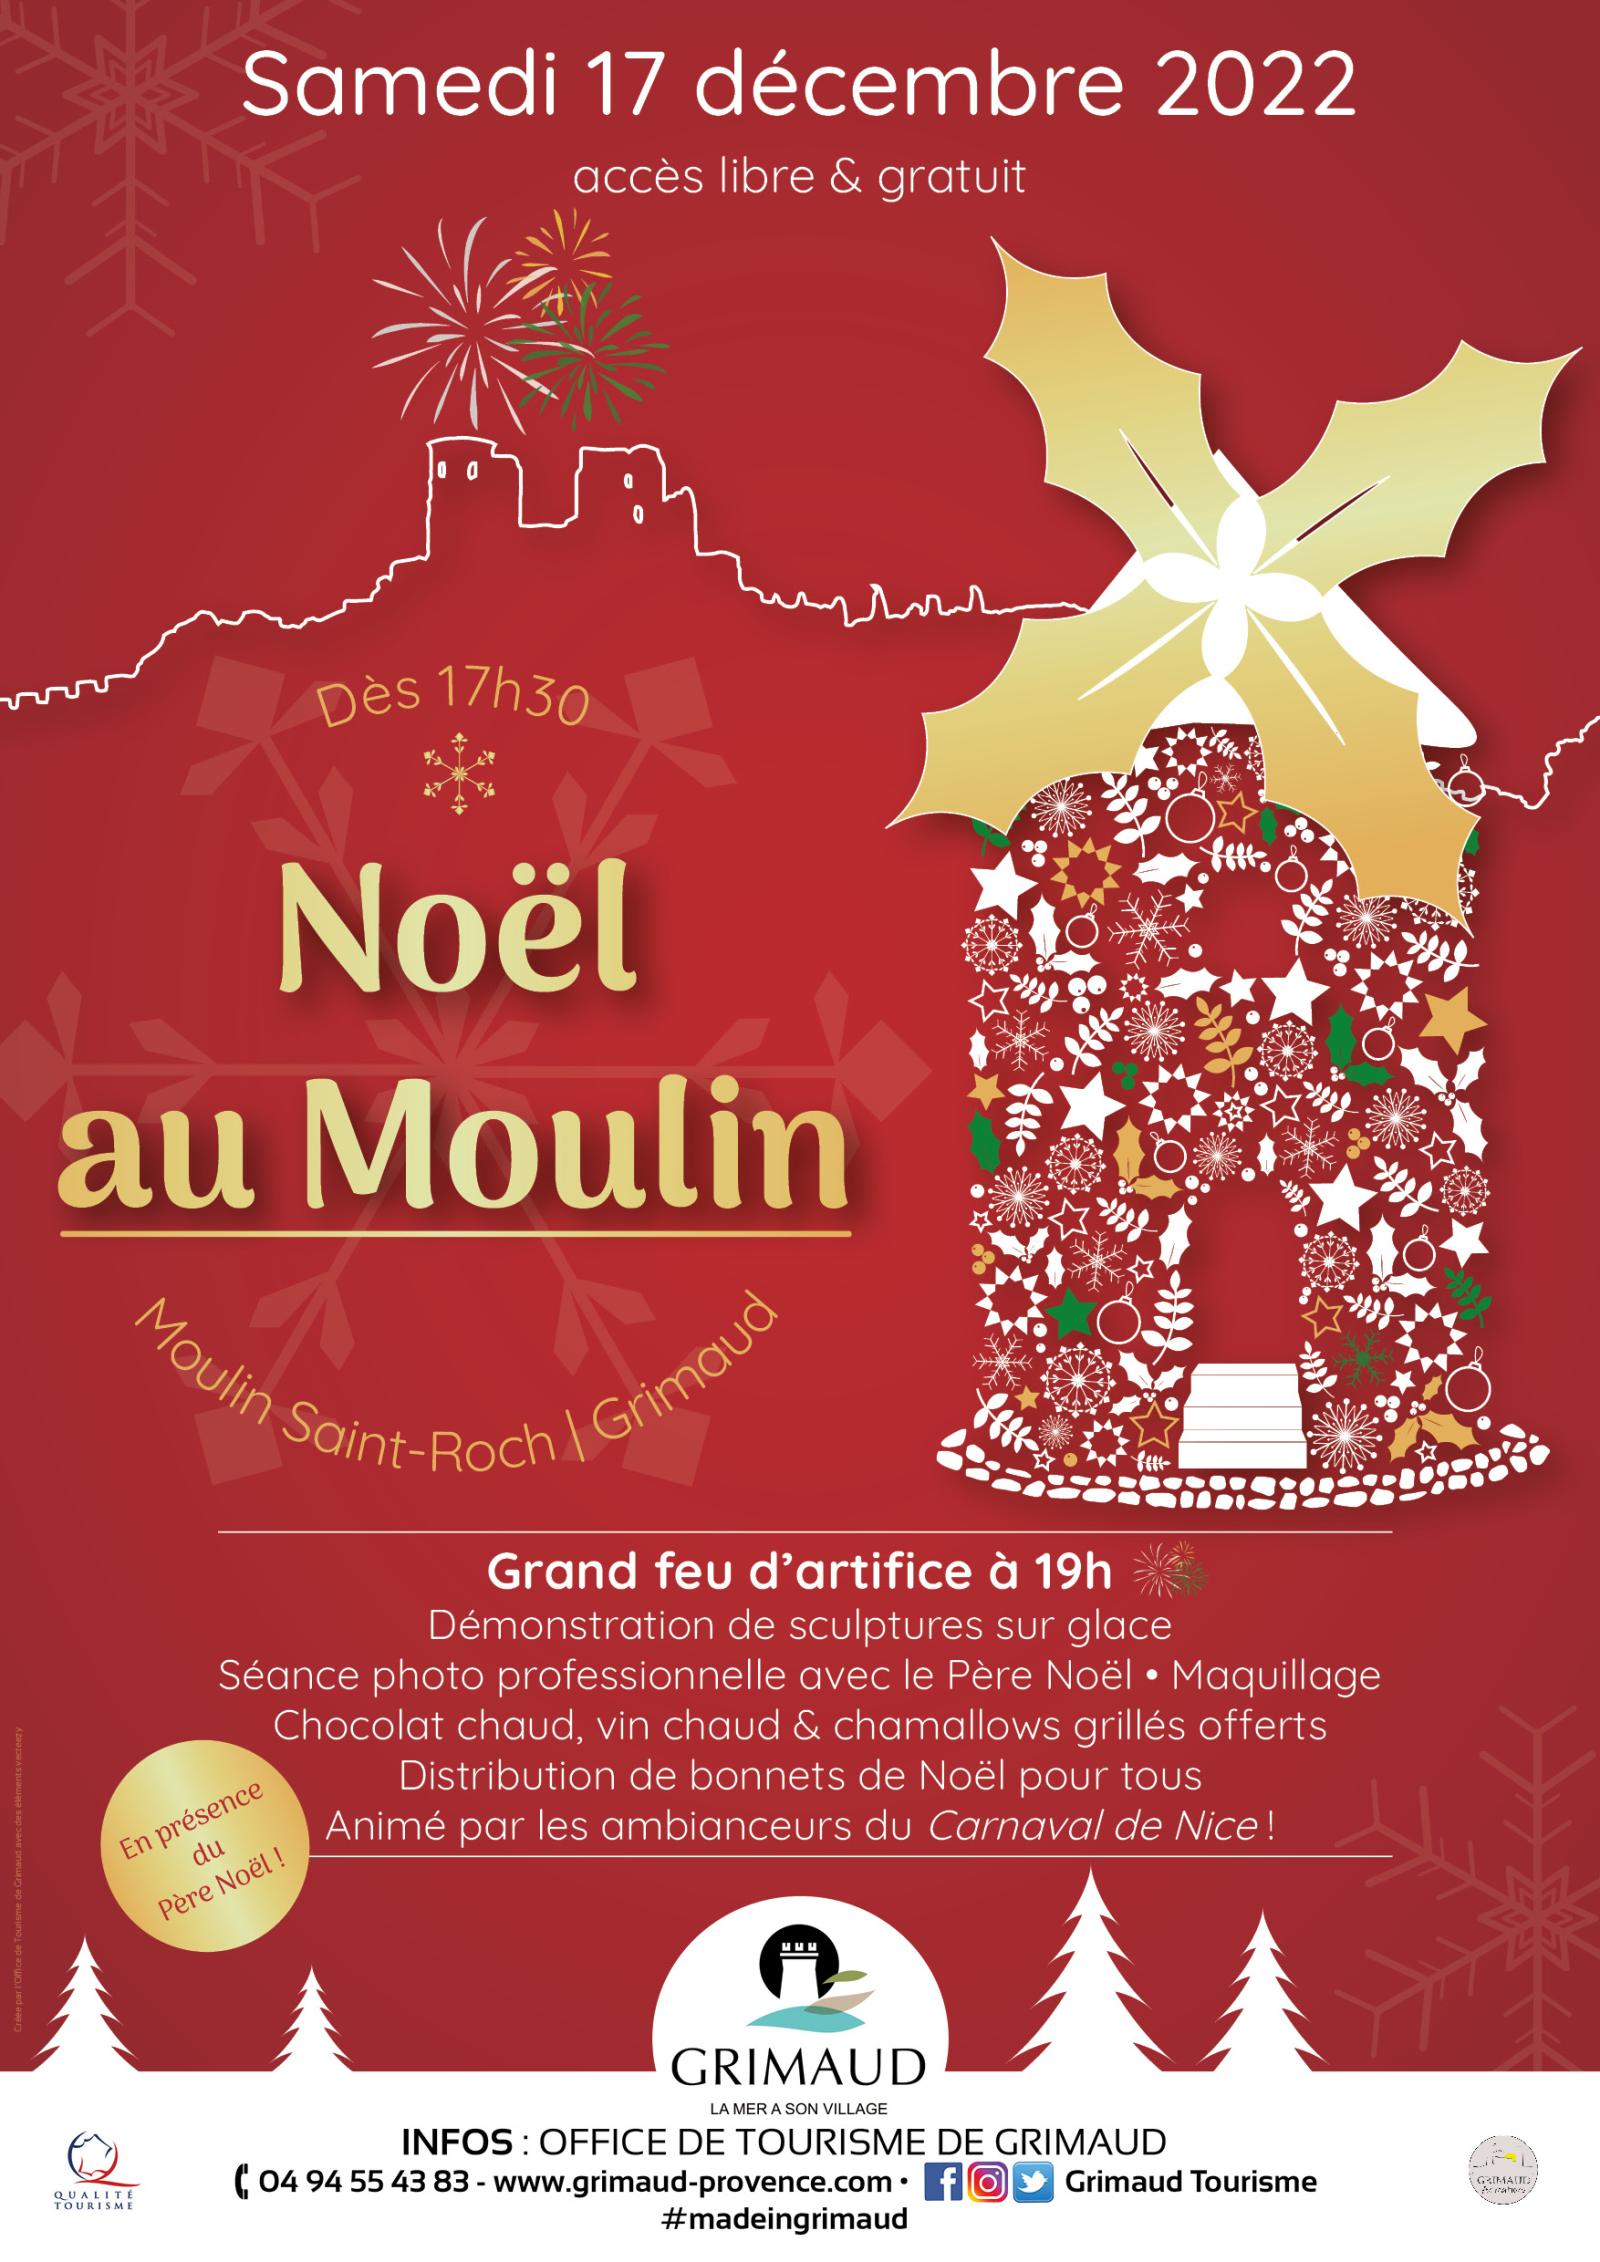 Samedi 17 décembre 2022 : Noël au moulin 